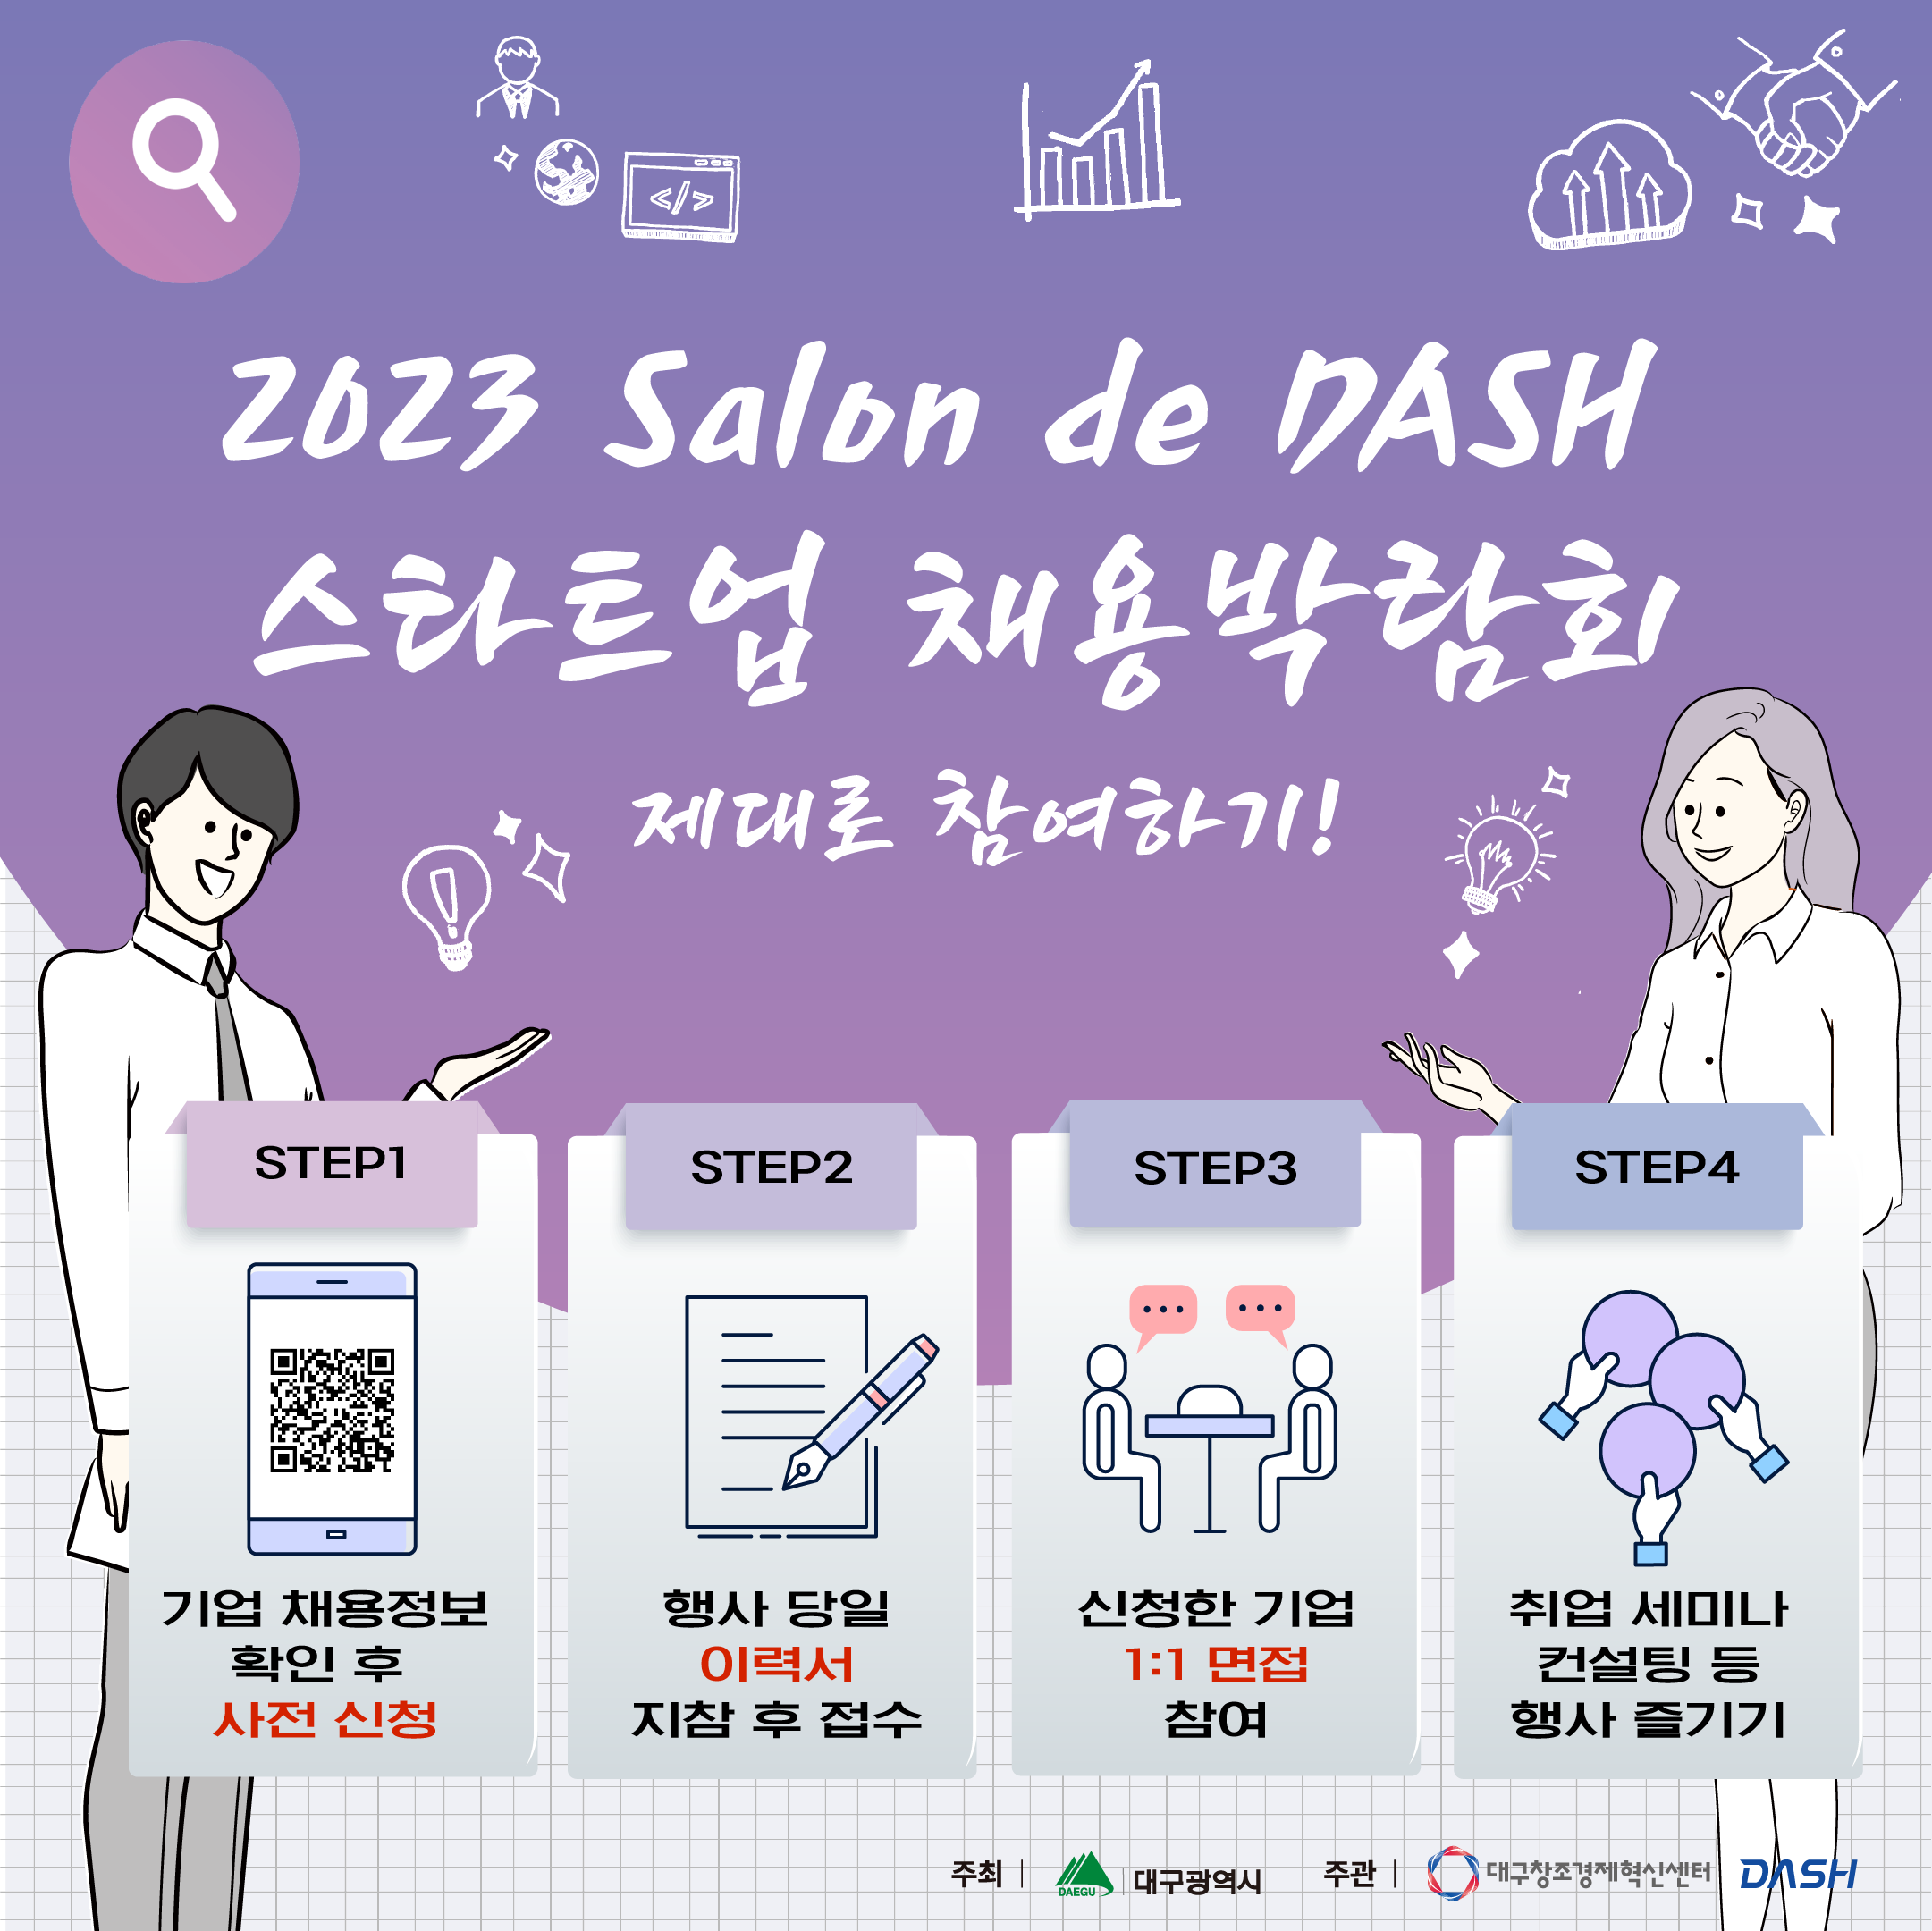 [채용박람회] 2023년 DASH 스타트업 채용박람회